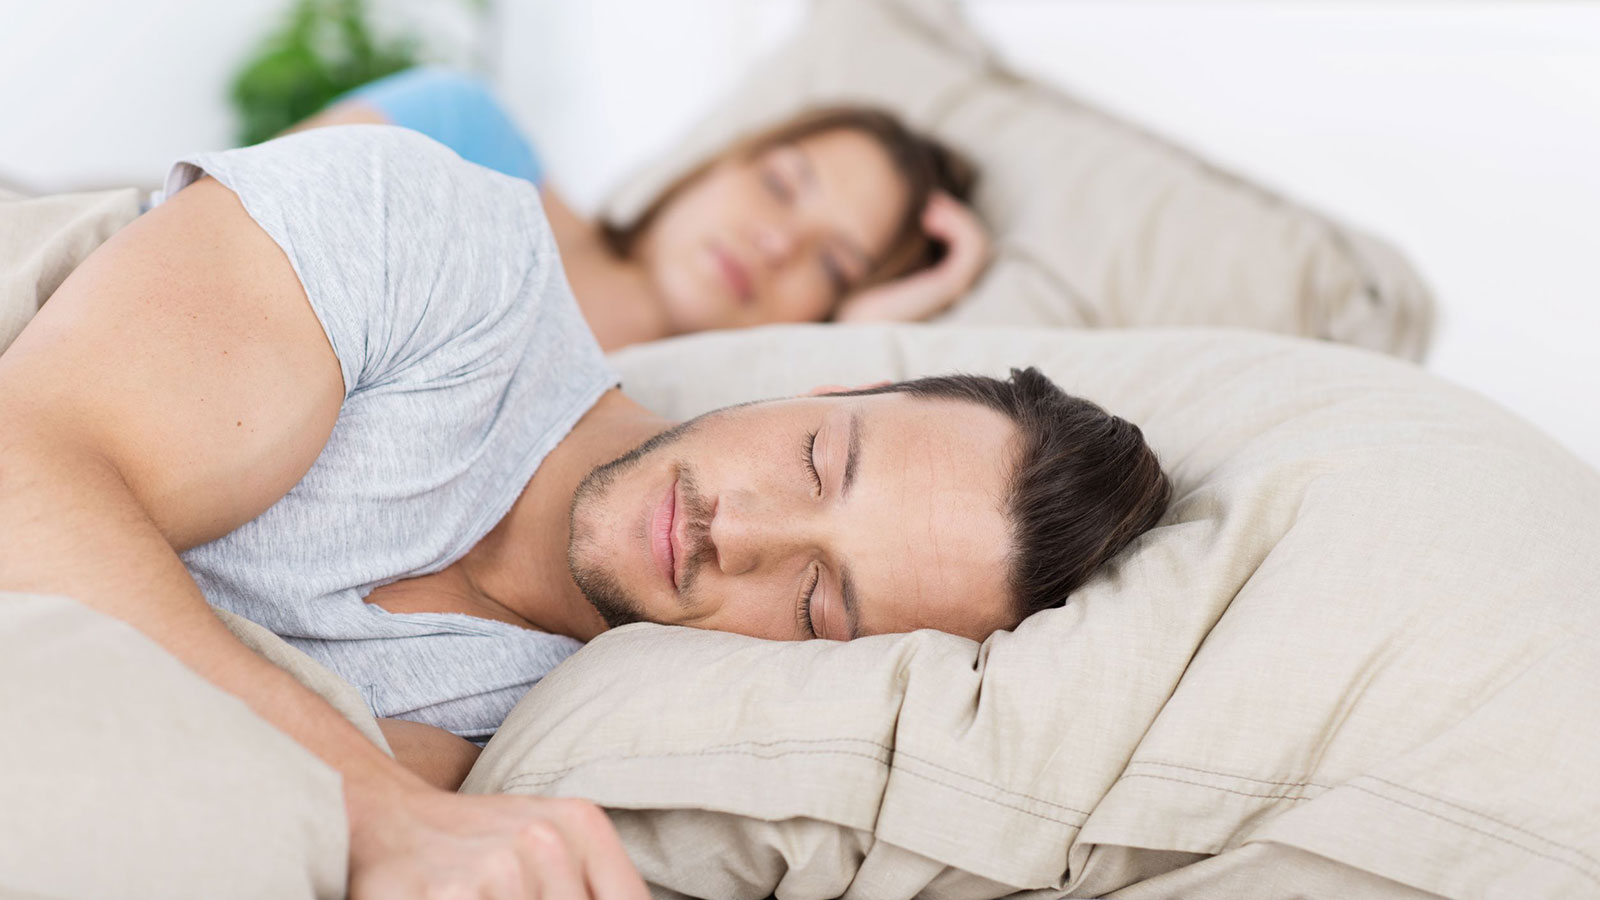 Treating sleep apnea